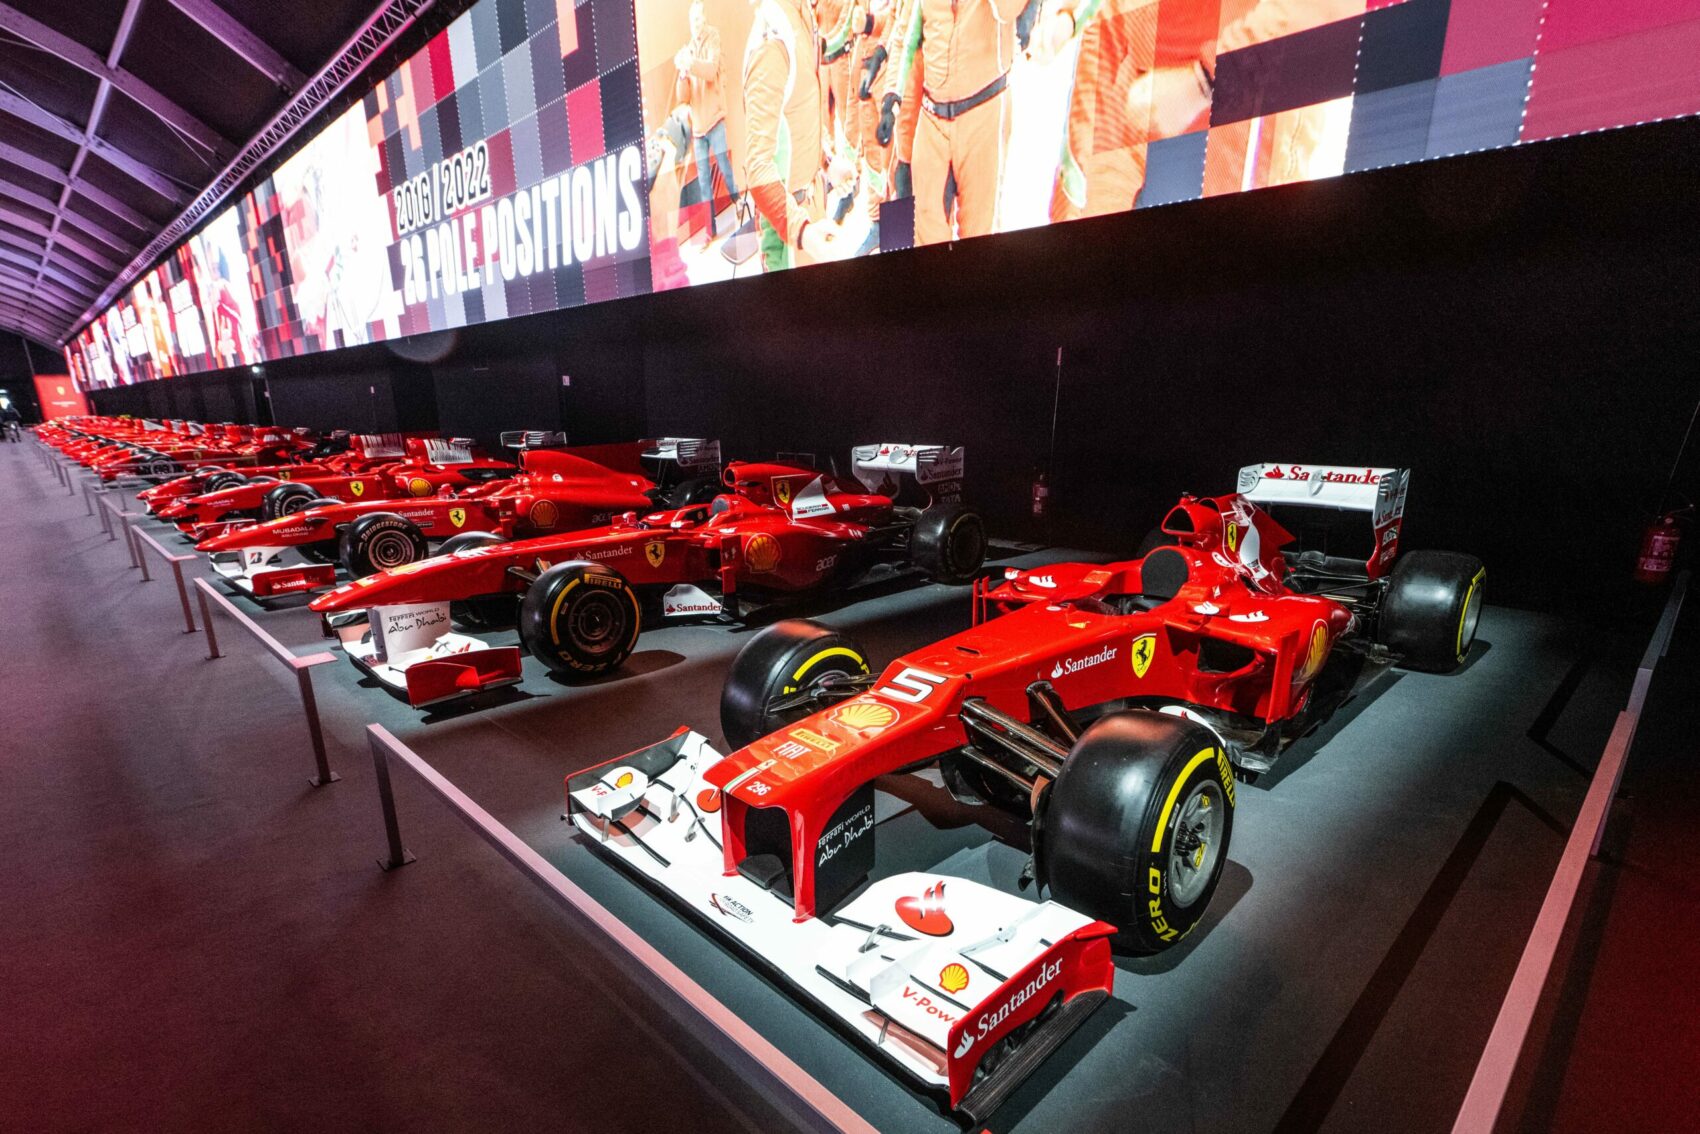 Ferrari F2012, Finali Mondiali 2022